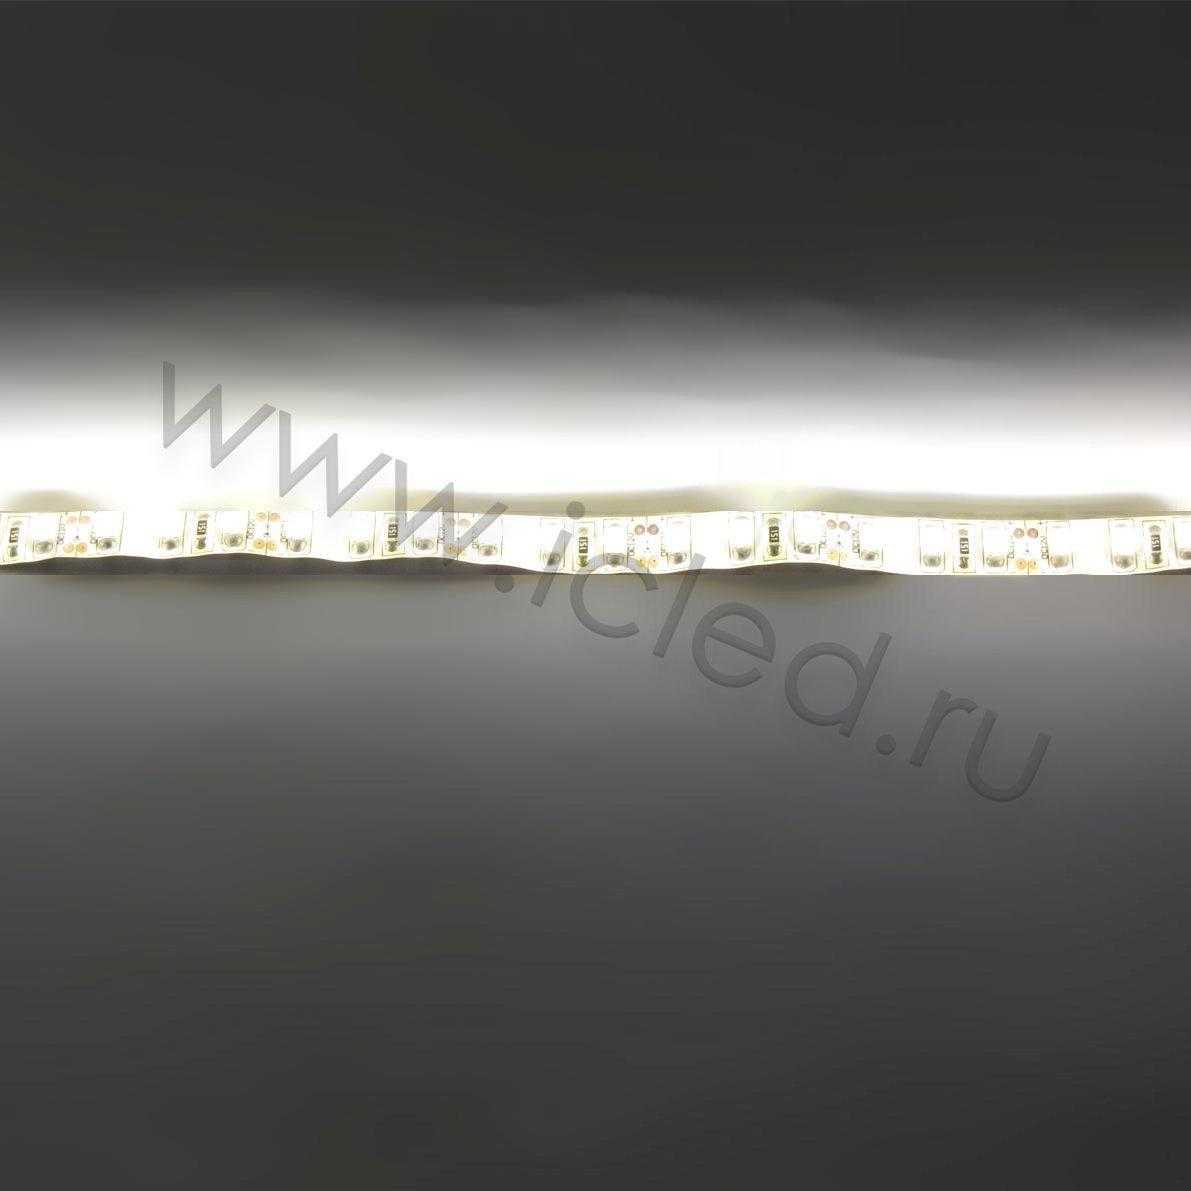 Влагозащищенные светодиодные ленты Светодиодная лента Standart PRO class, 3528, 120 led/m, Warm White, 12V, IP65 Icled